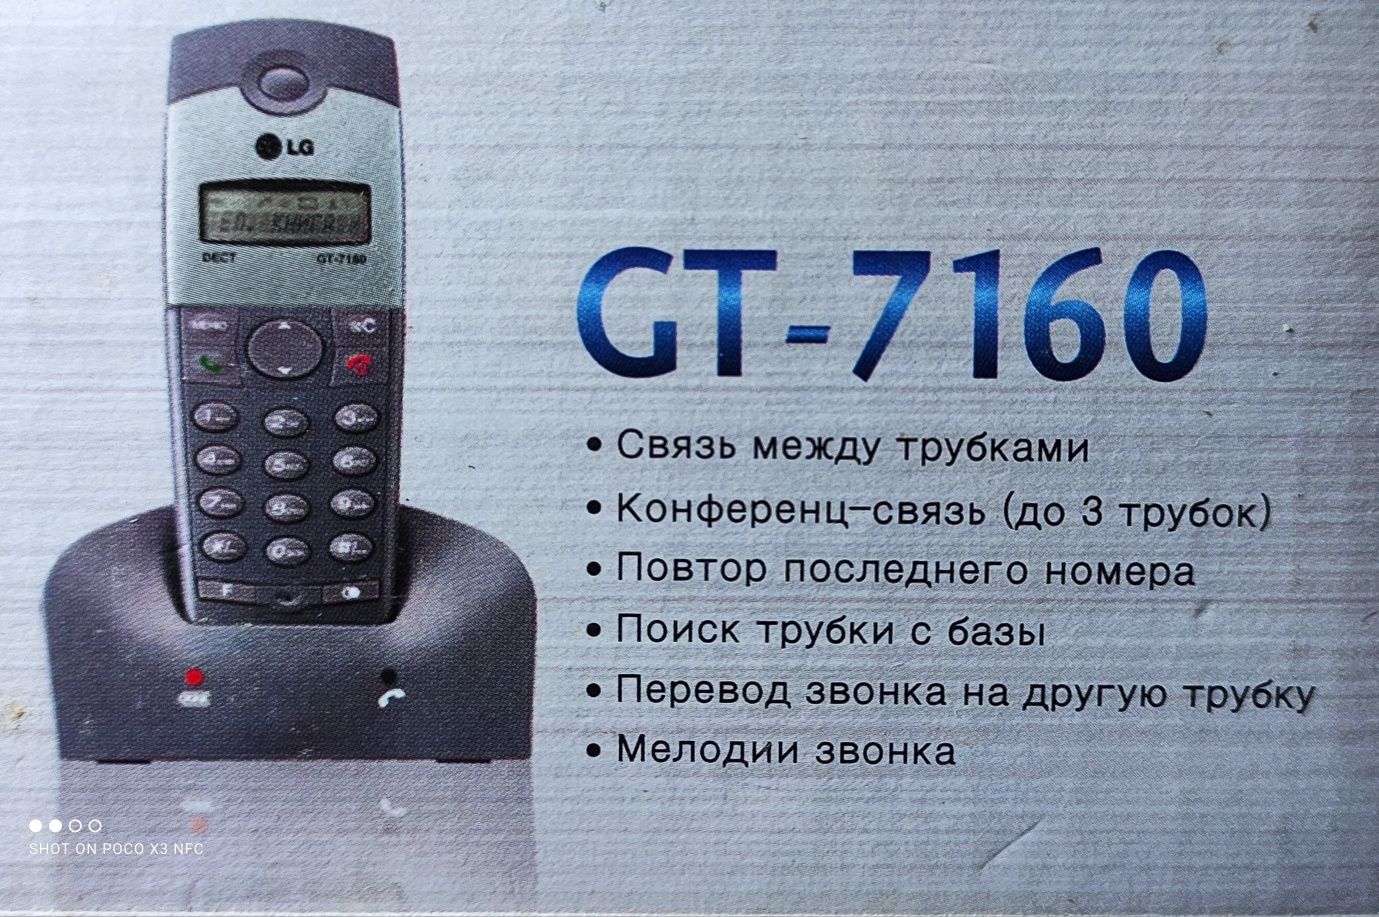 Безпровідний телефон LG GT-7160 стандарту DECT